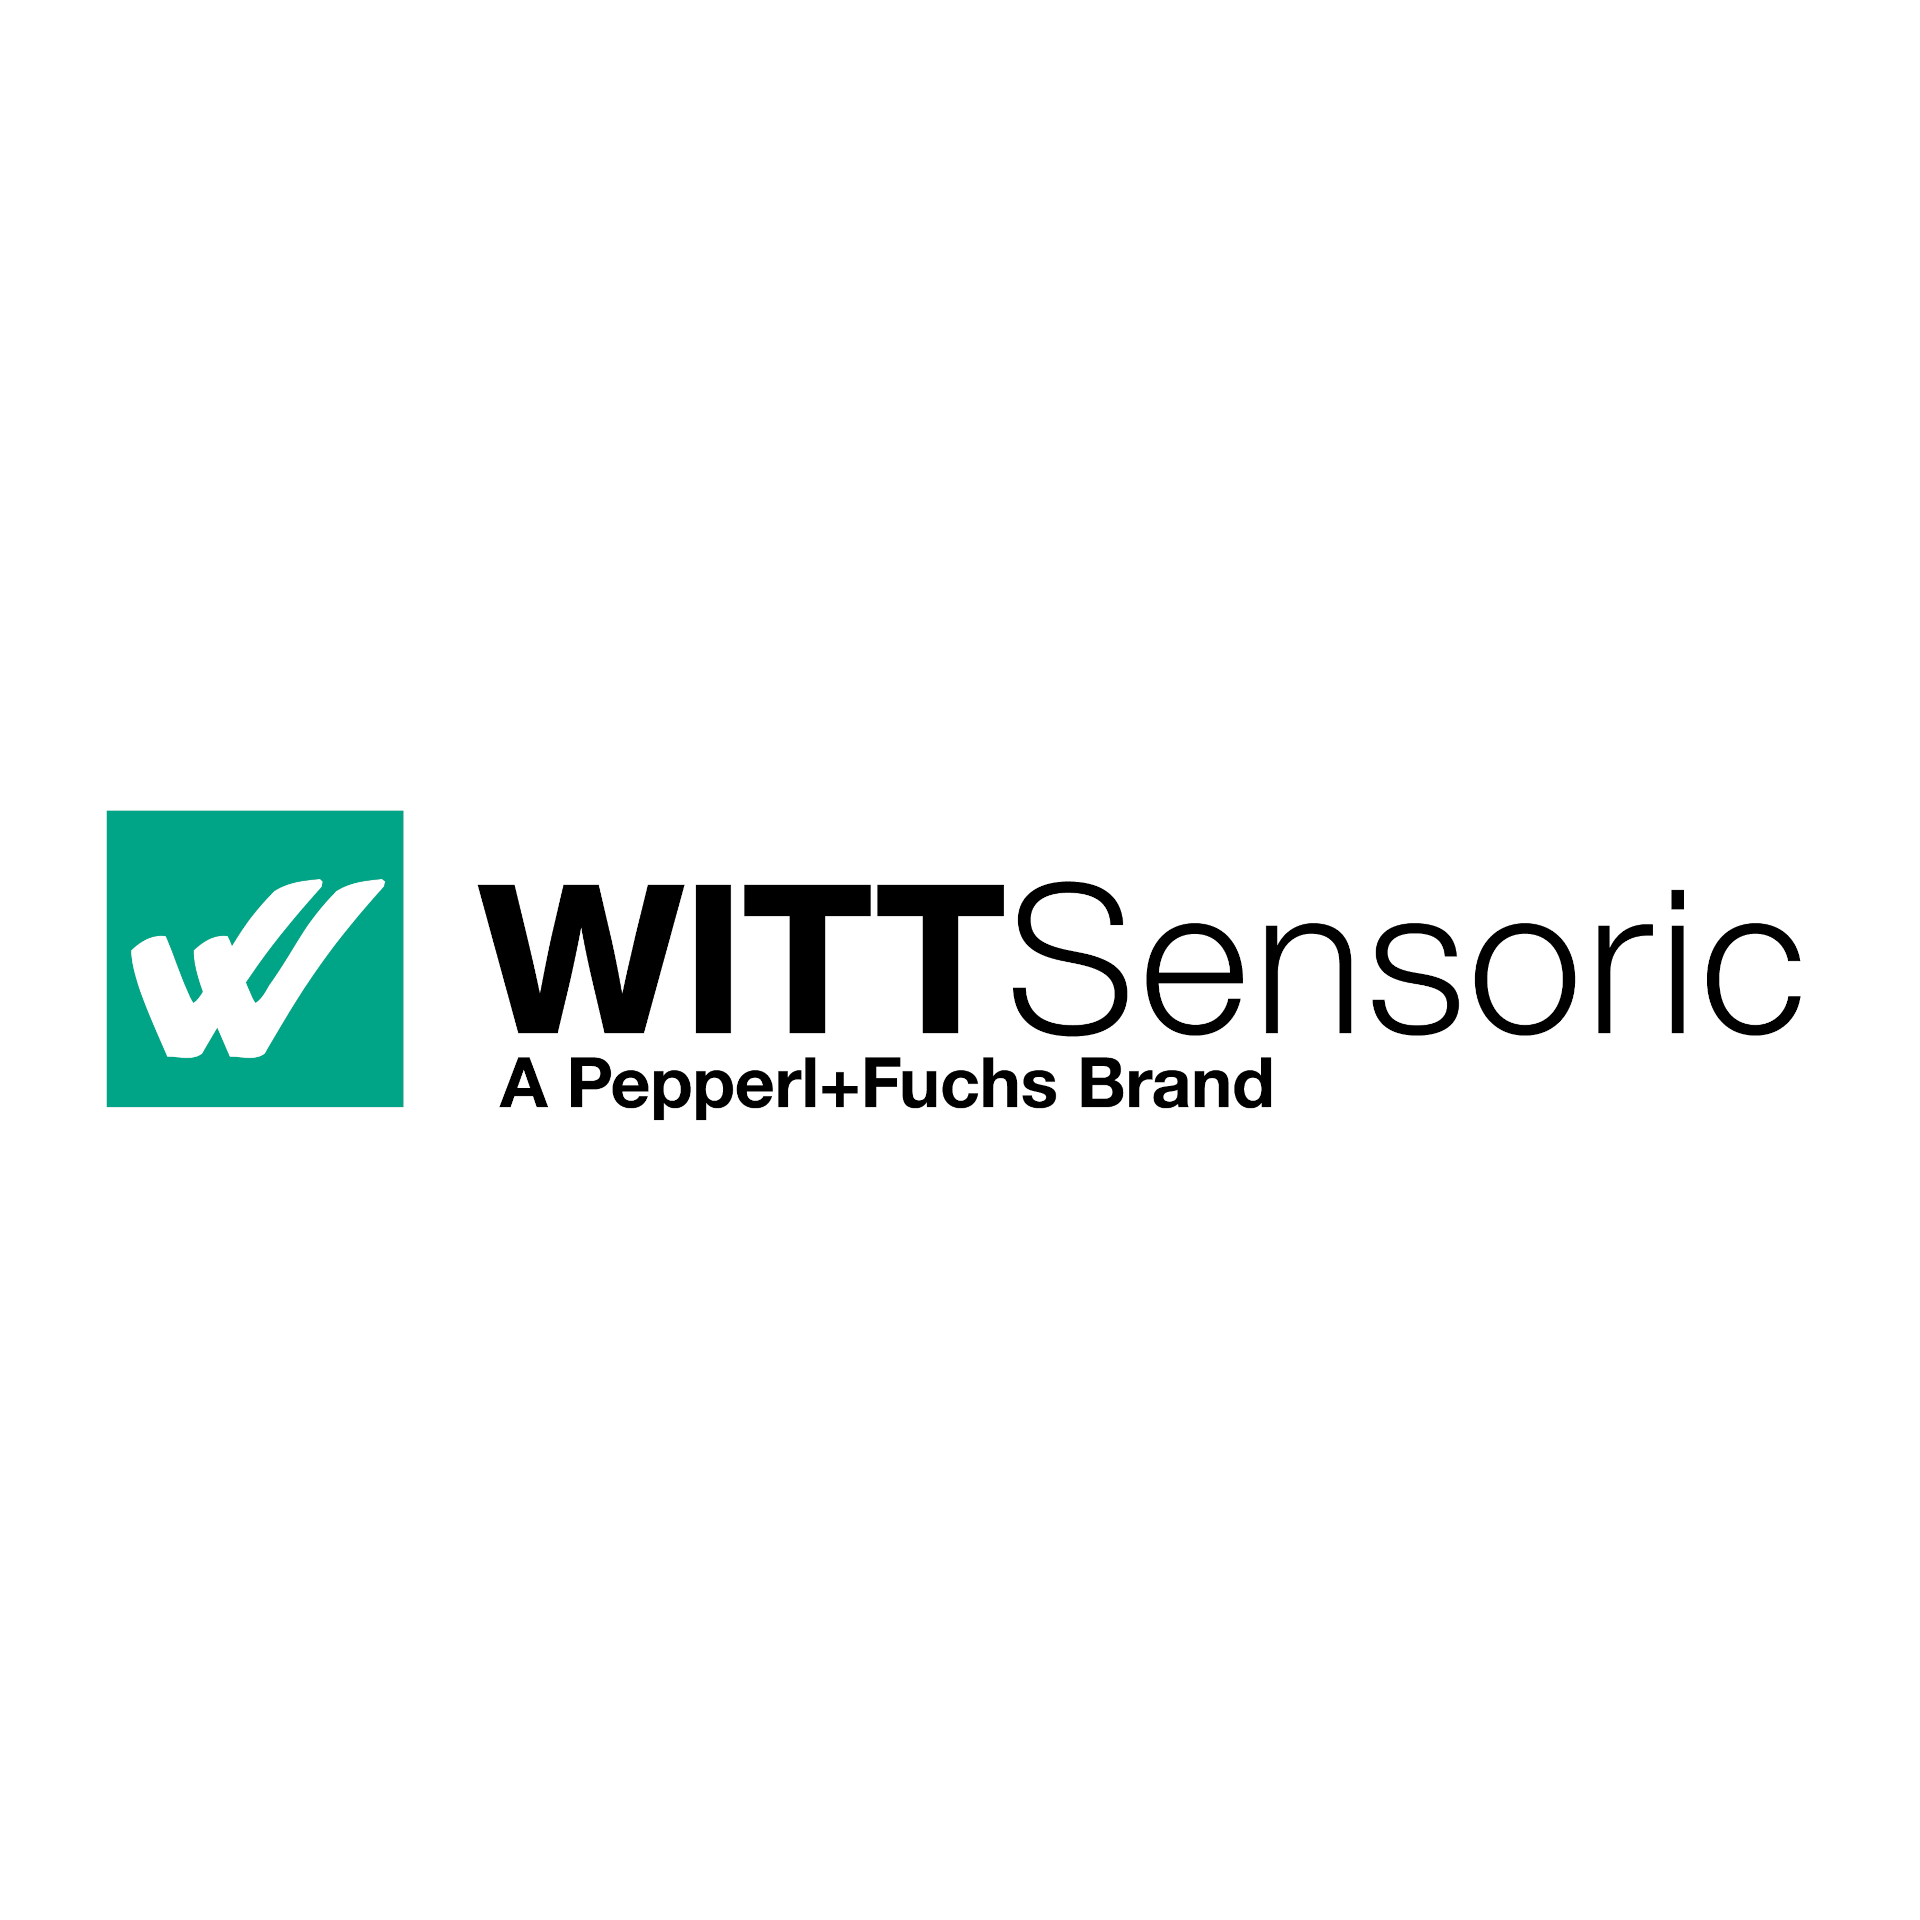 WITT Sensoric – A marca Pepperl+Fuchs para automação de portões